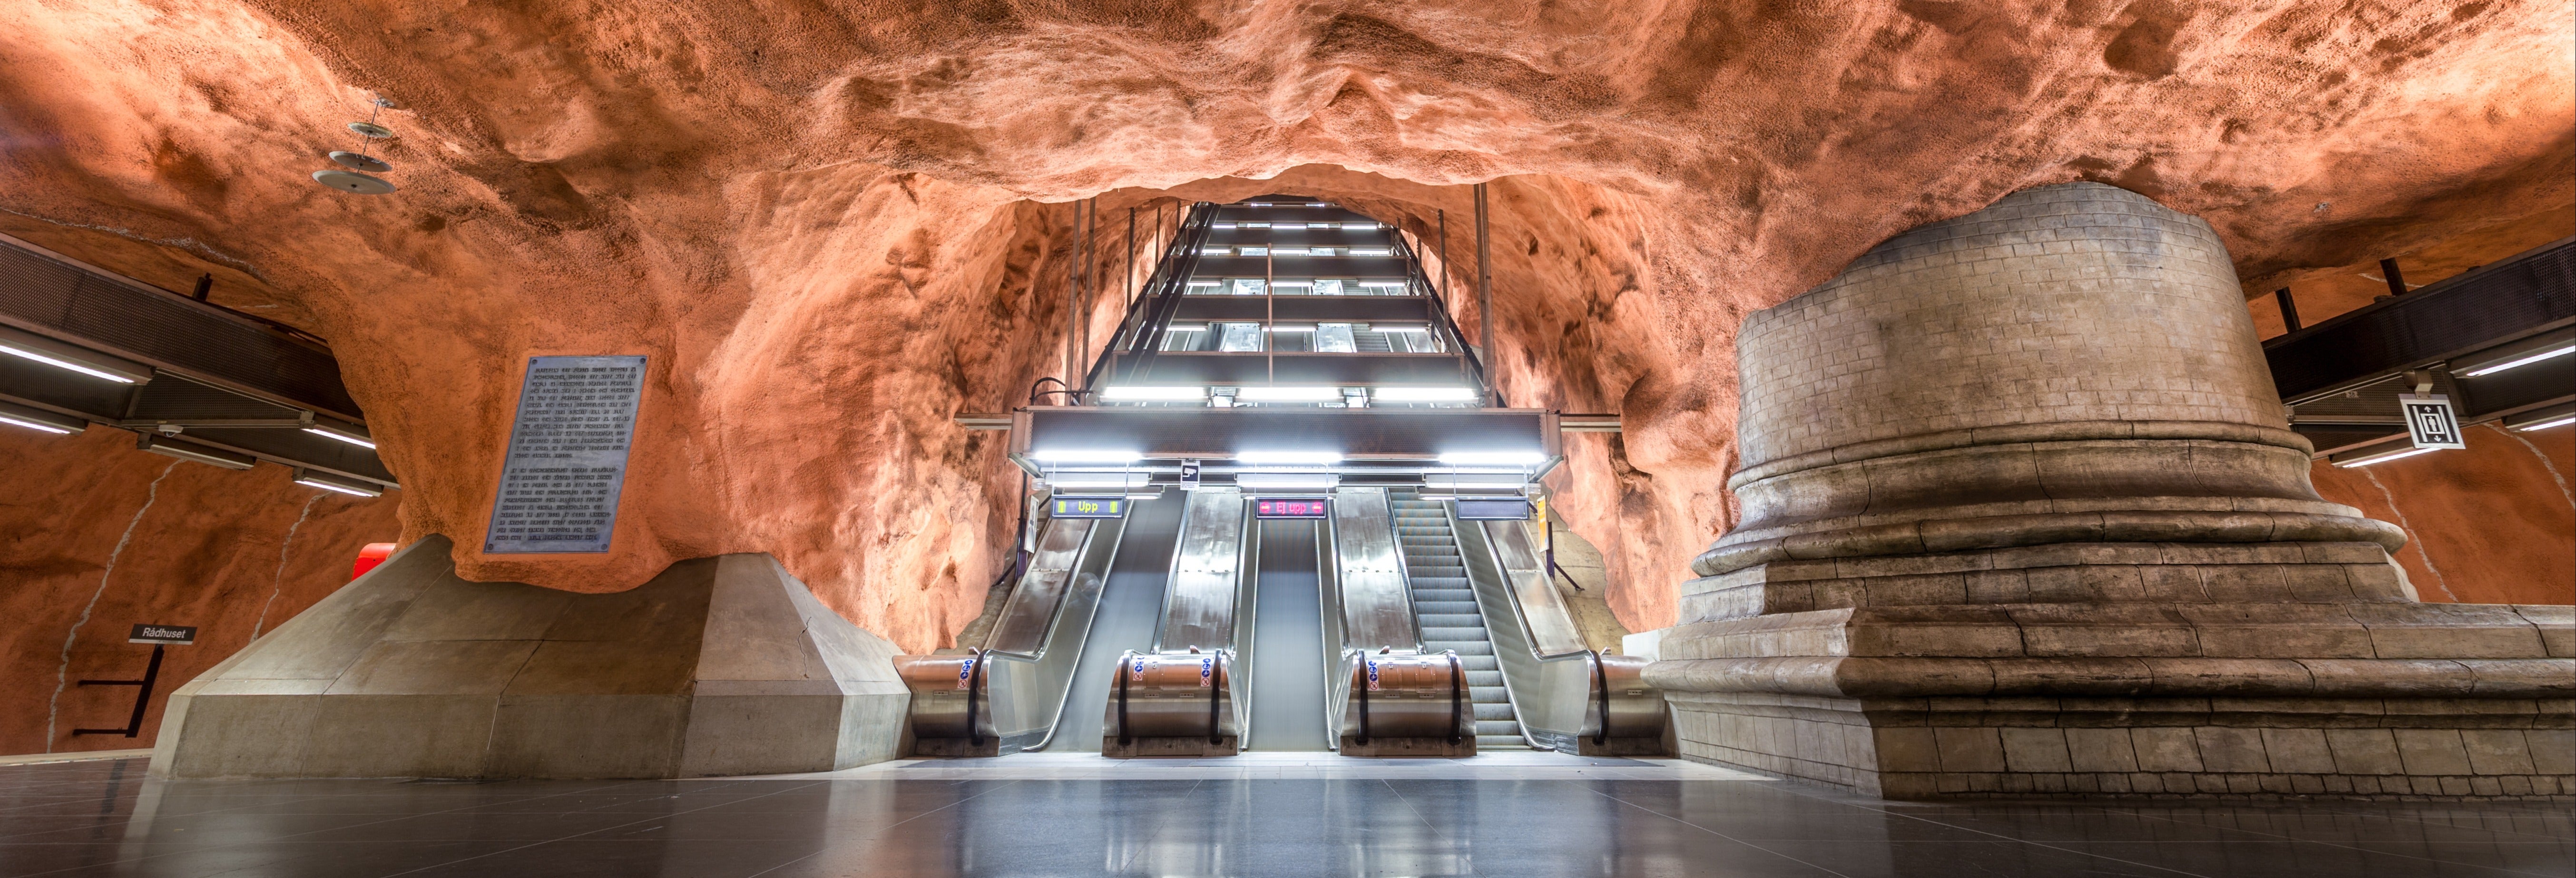 Tour pelo metrô de Estocolmo